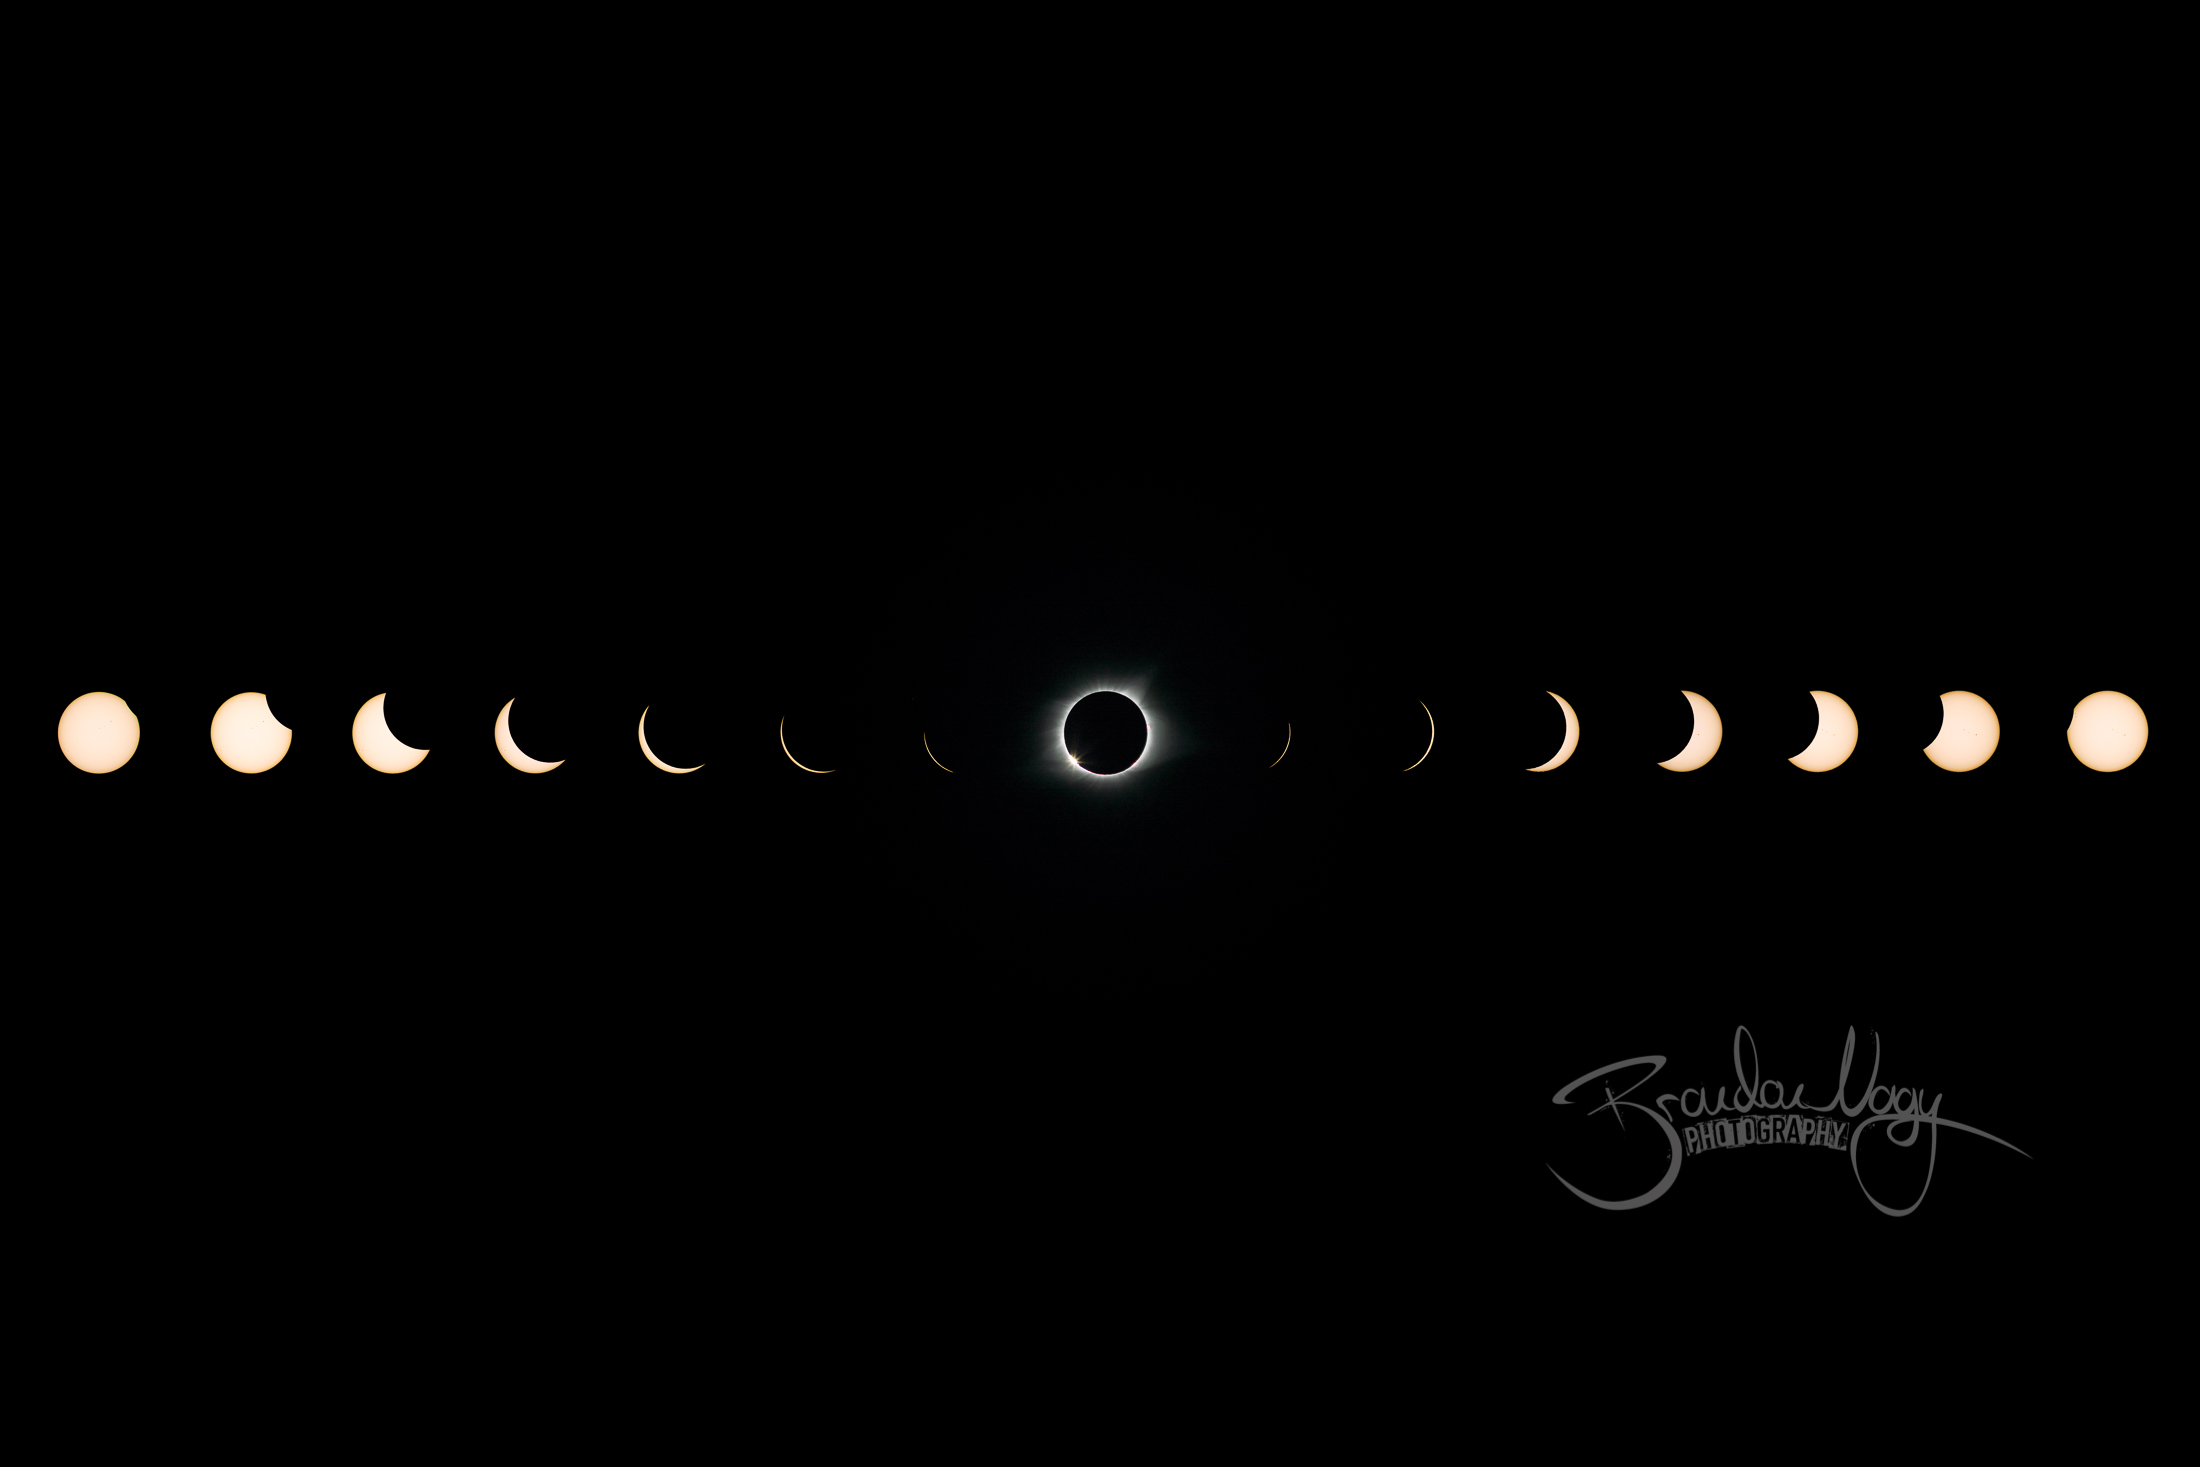 North American Solar Eclipse | 2017.08.21